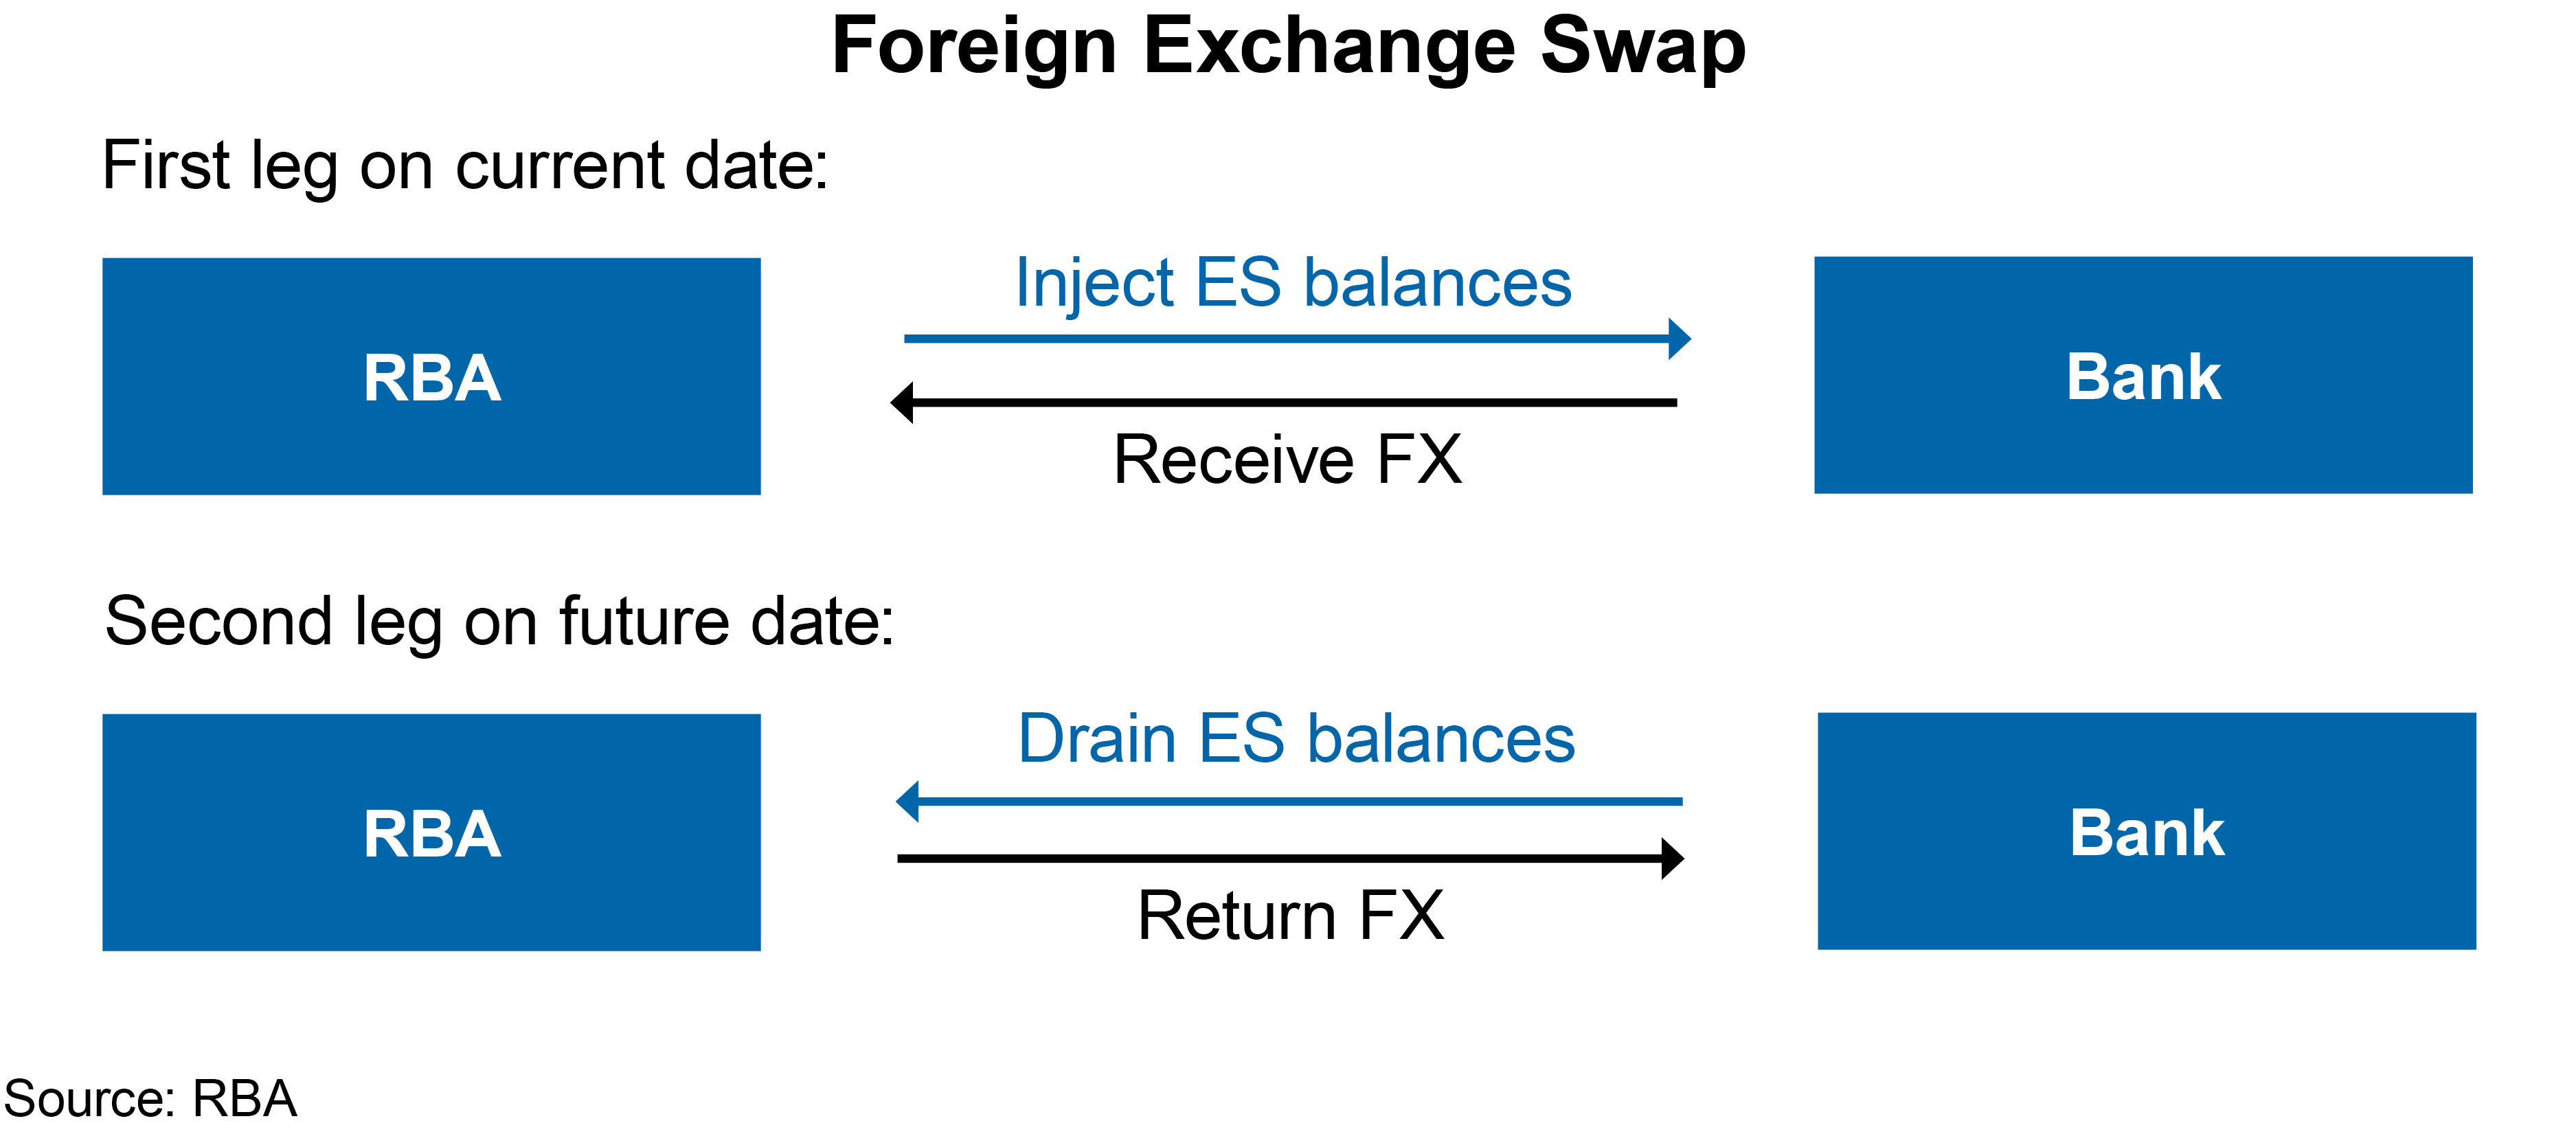 Figure 2: Foreign Exchange Swap